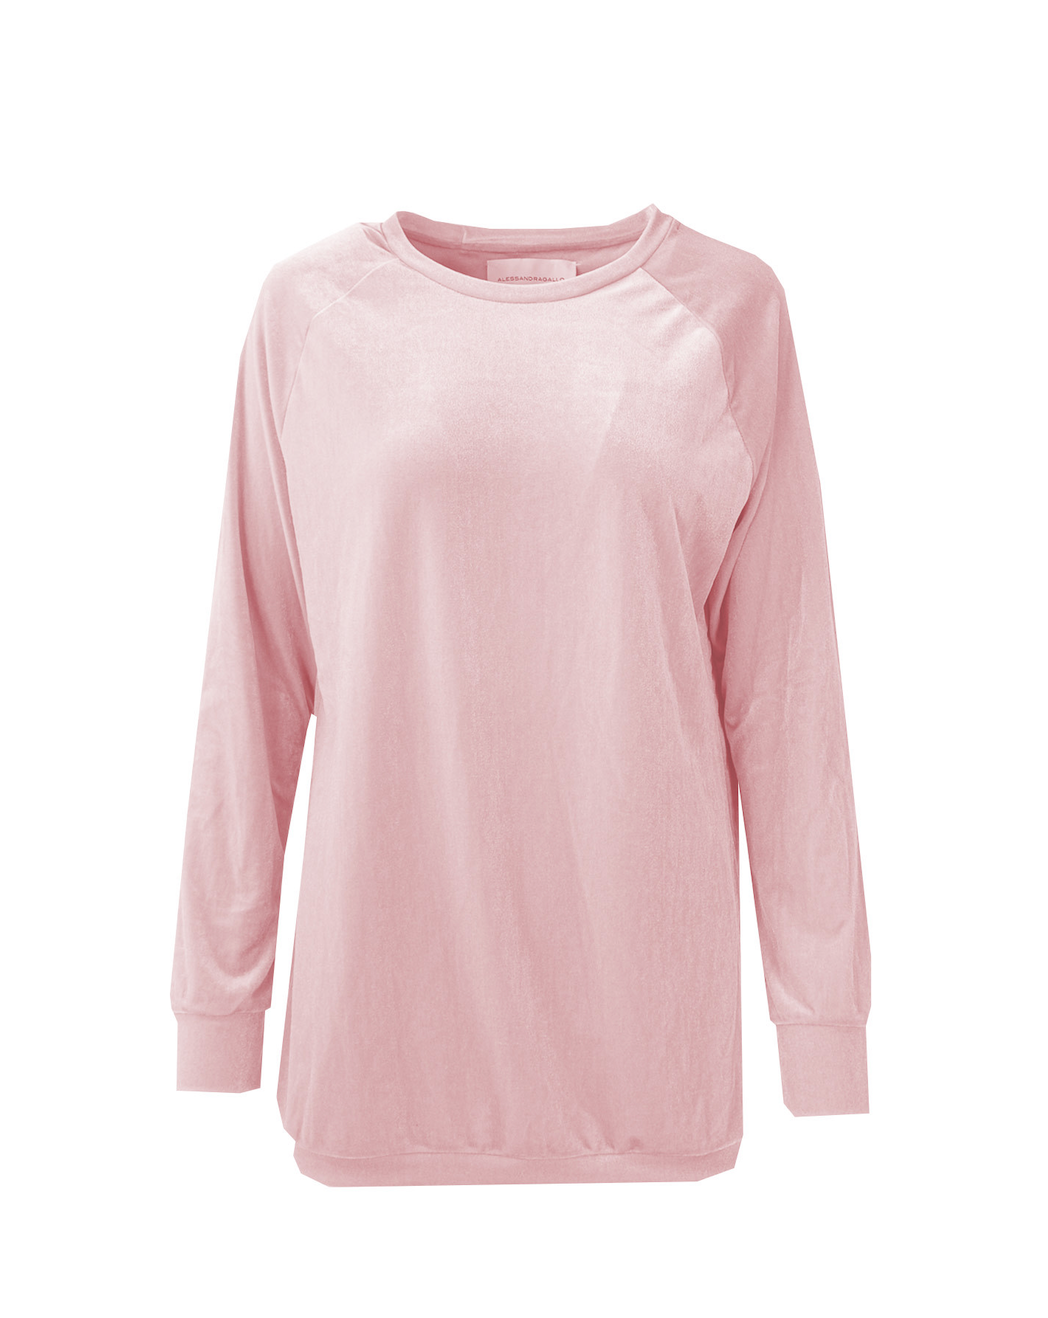 FLORA - chenille sweatshirt in pink